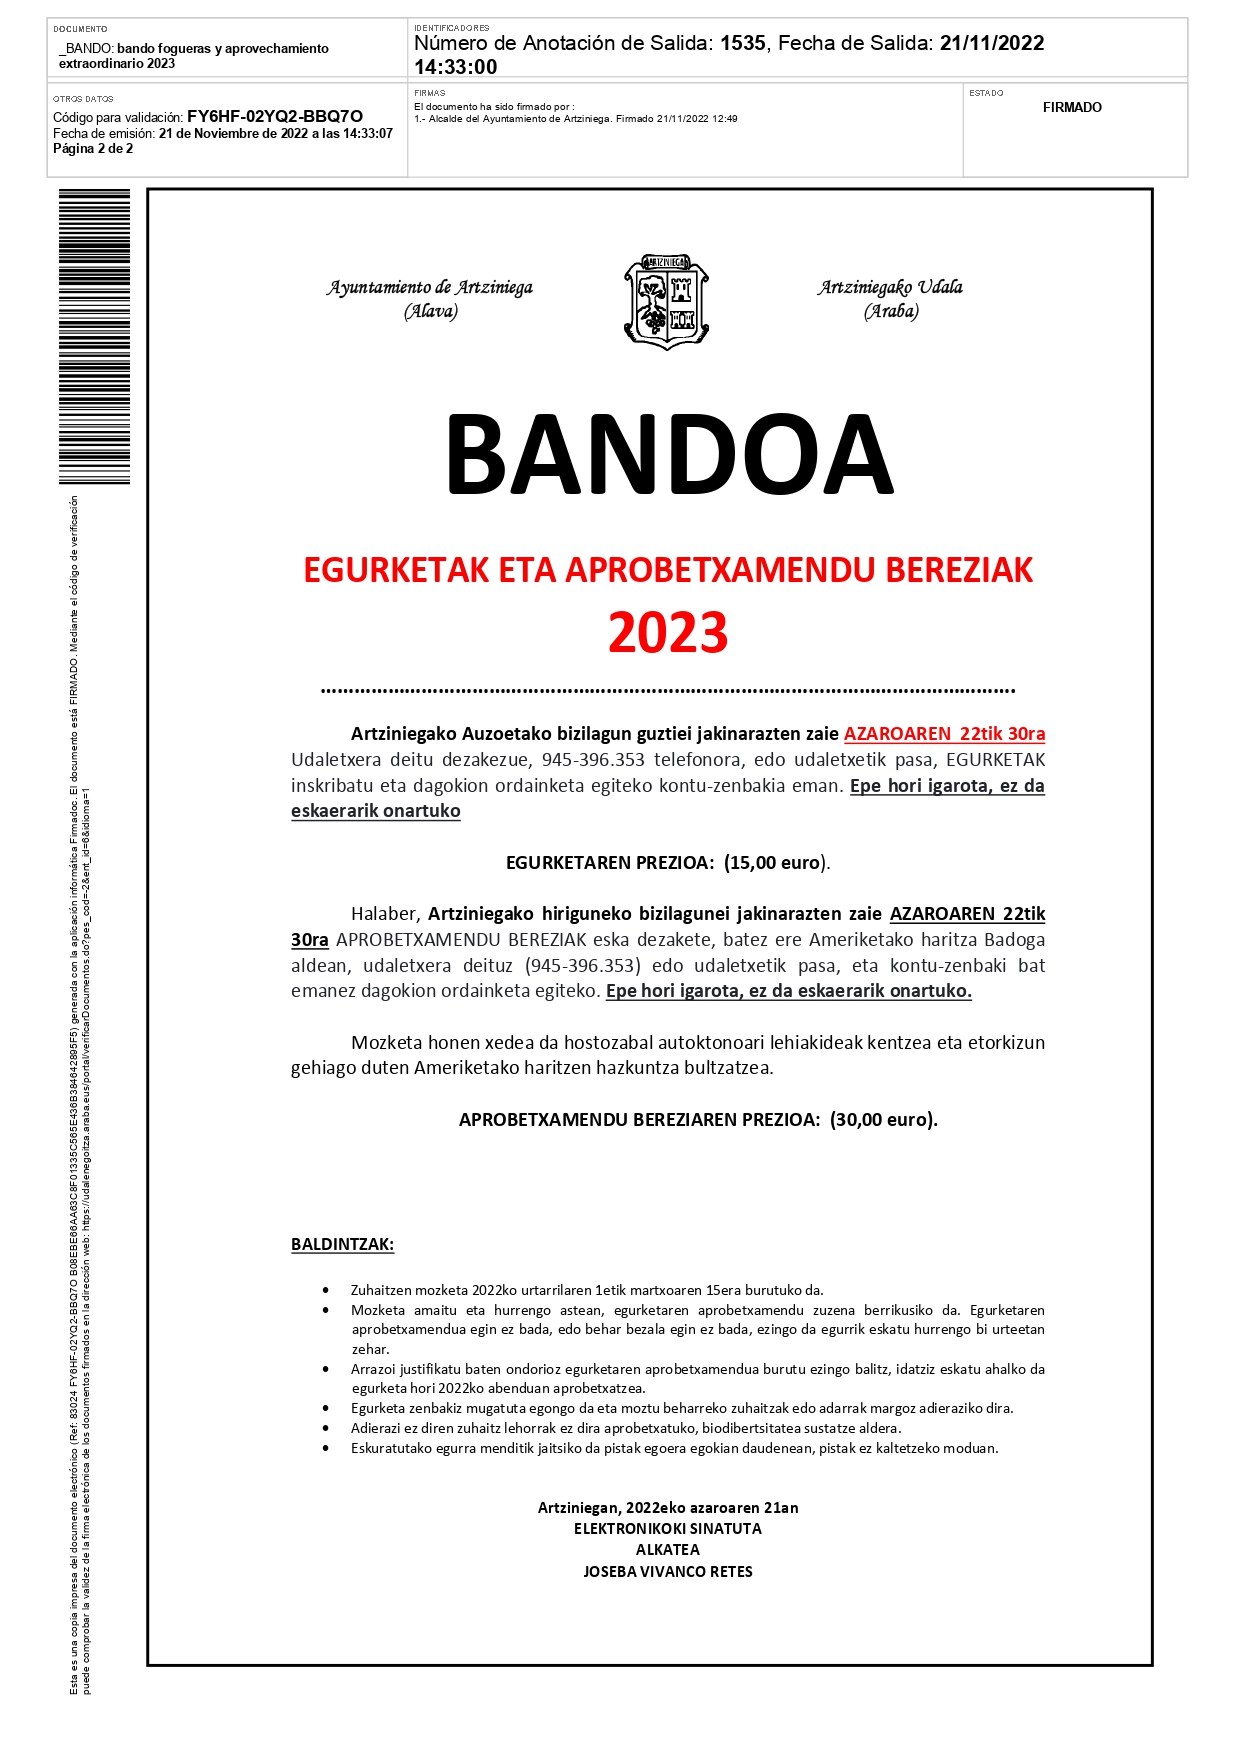 BANDOA: EGURKETAK ETA APROBETXAMENDU BEREZIAK 2023